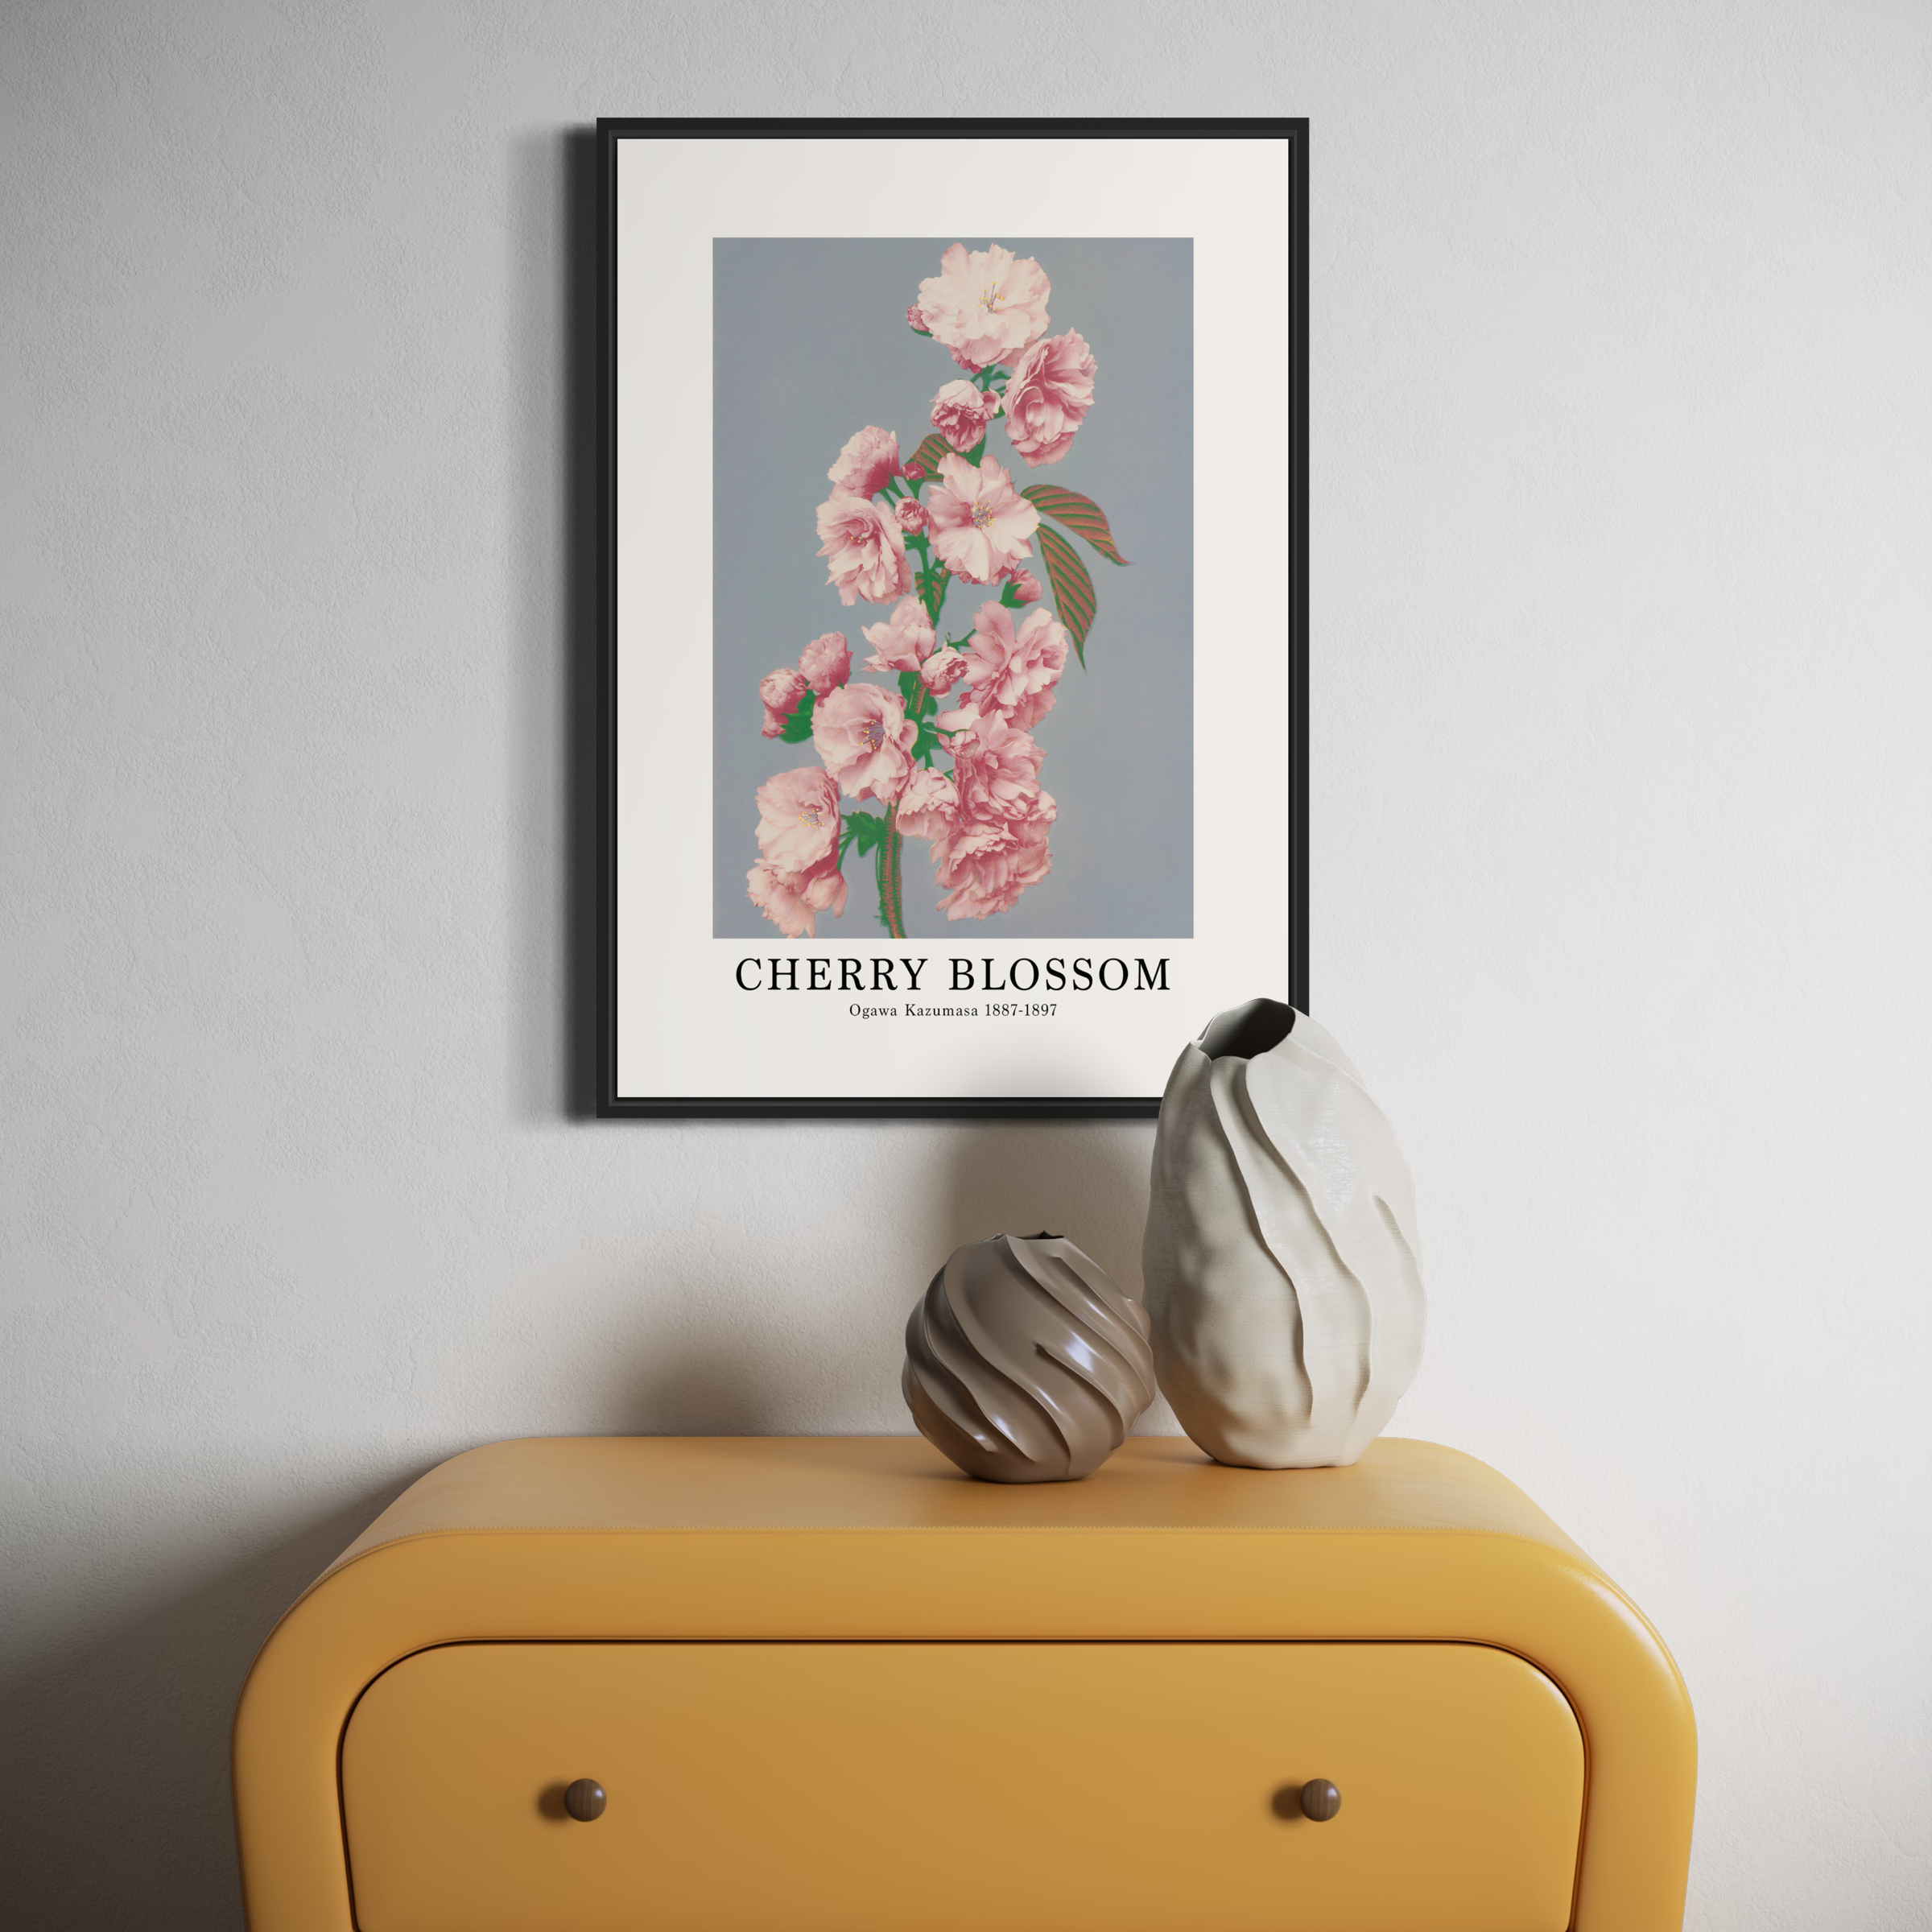 Ogawa Kazumasa Poster - Cherry Blossom